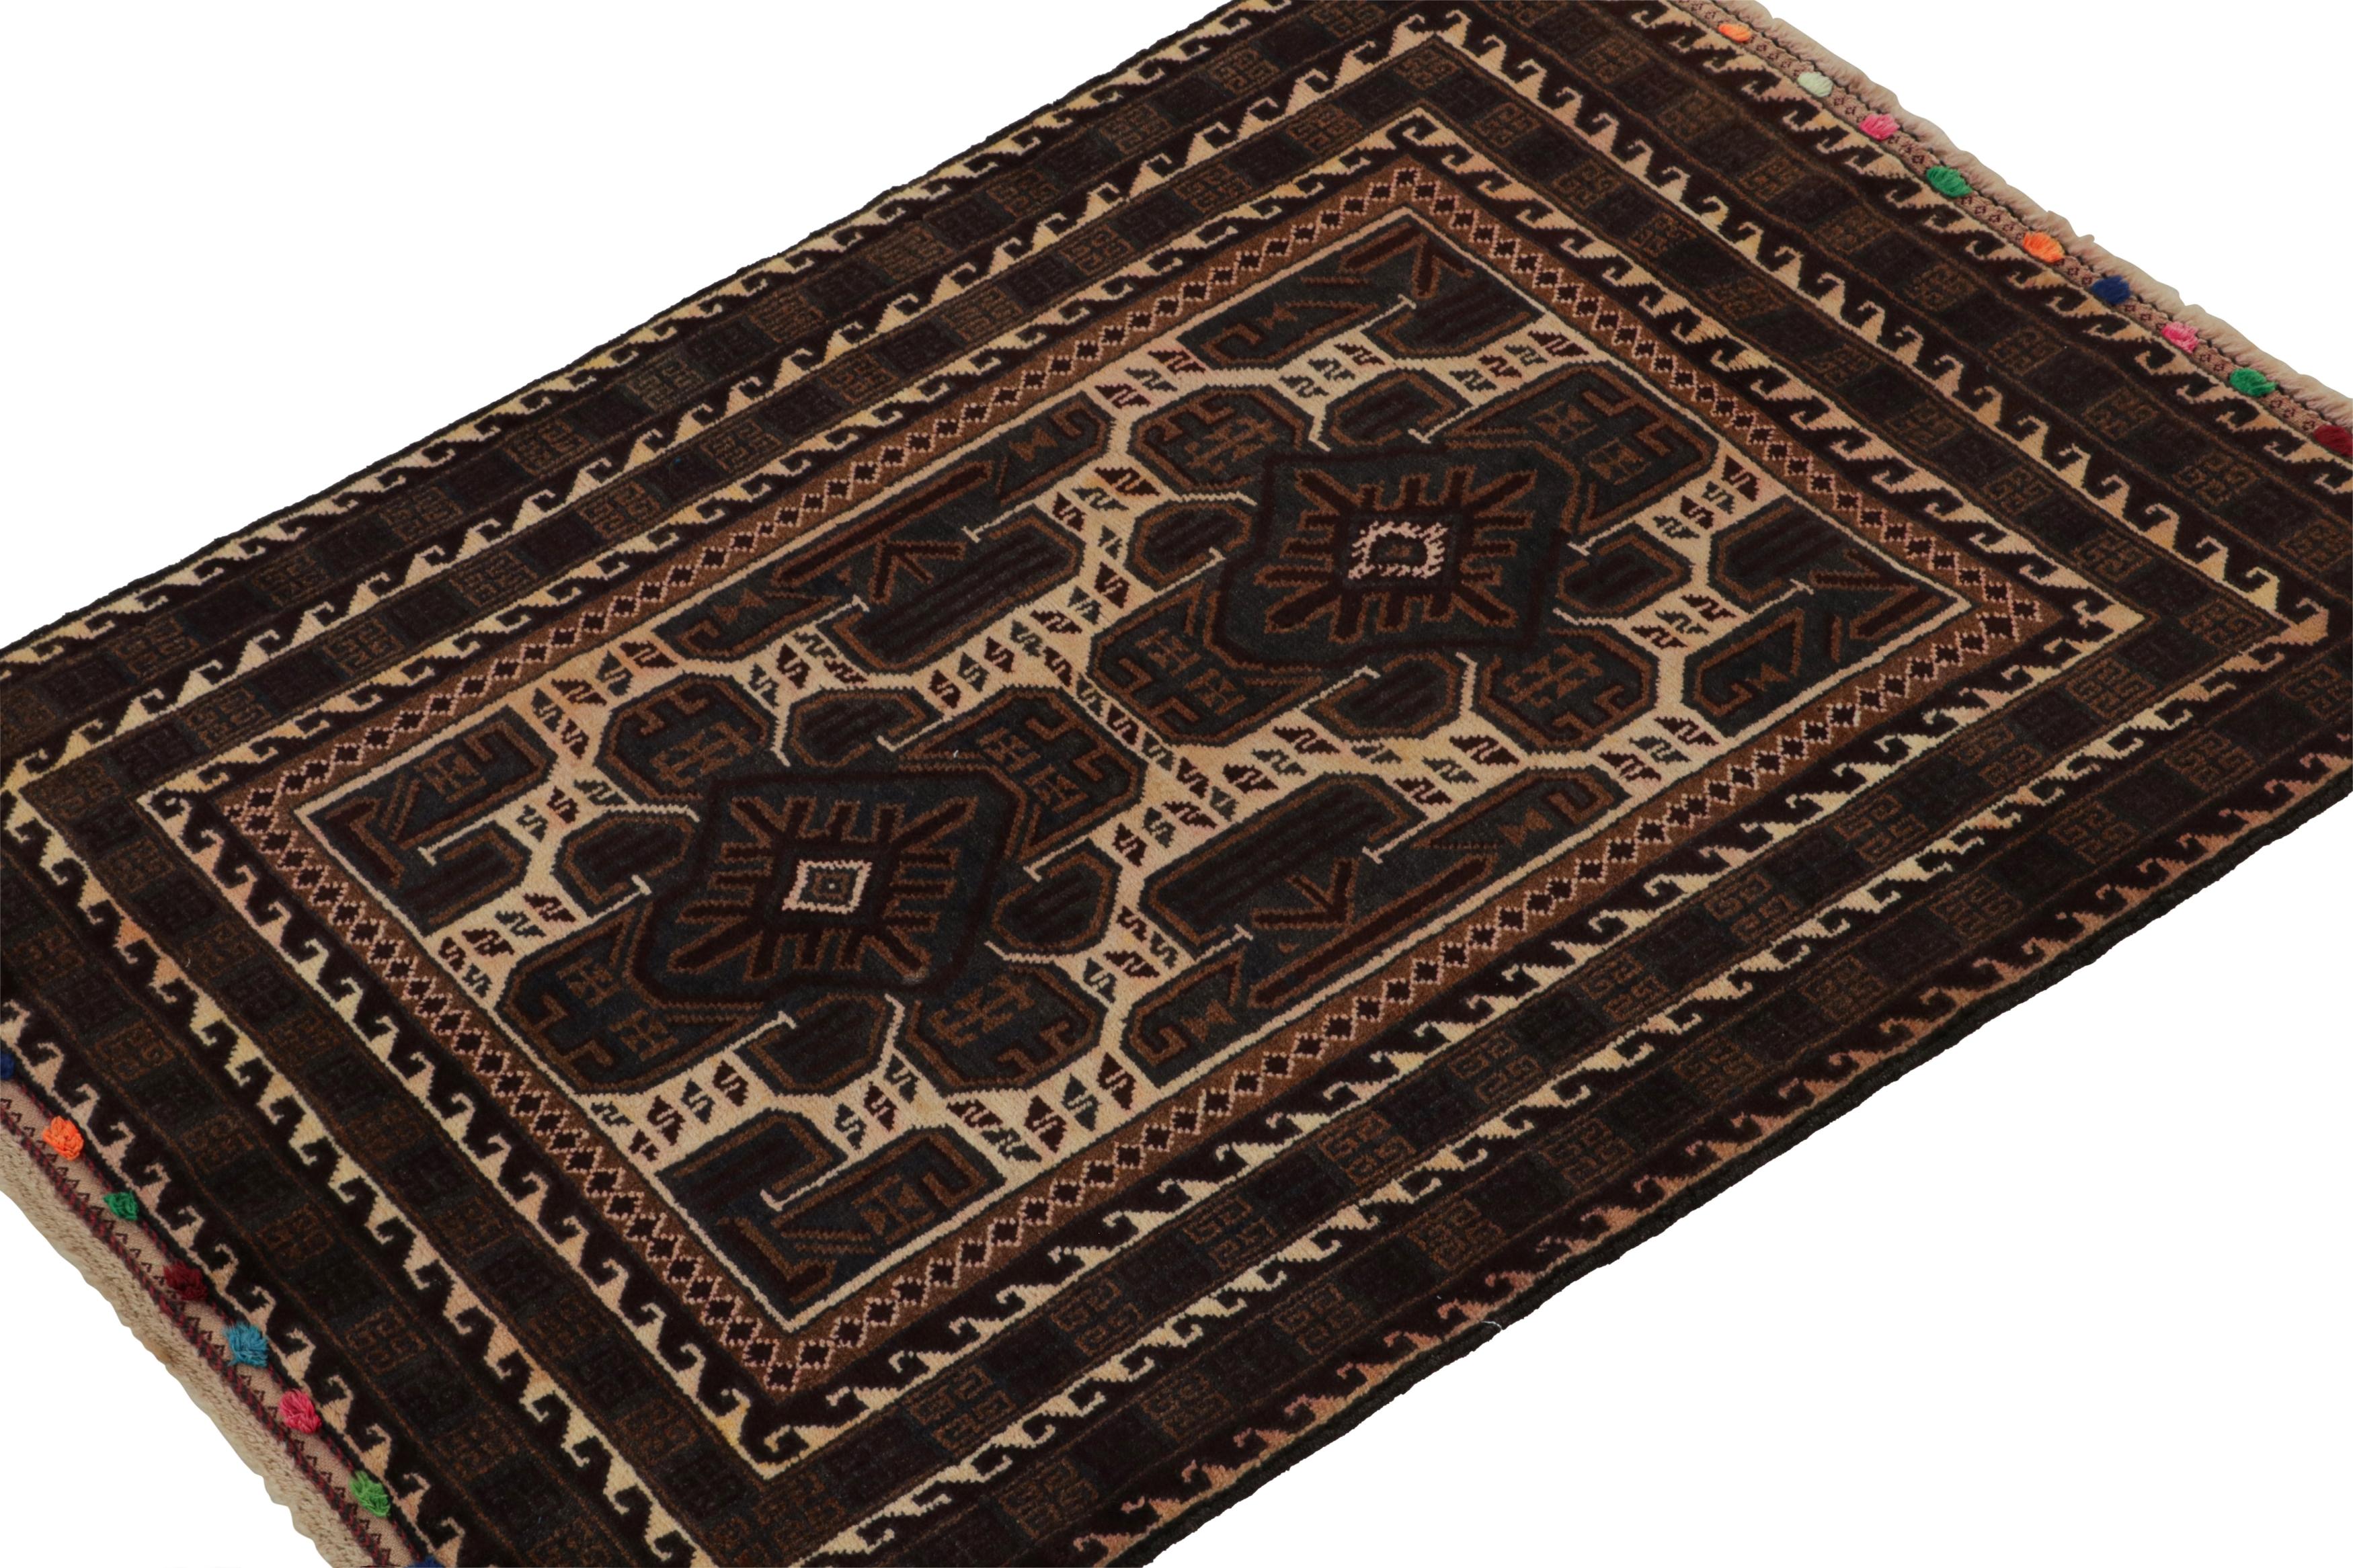 Noué à la main en laine, ce tapis persan 3x4 Baluch des années 1950 est le dernier né de la collection Antique & Kilim de Rug & Kilim.

Sur le Design :

La pièce est empreinte d'un profond sentiment de mystère que les pièces tribales traditionnelles